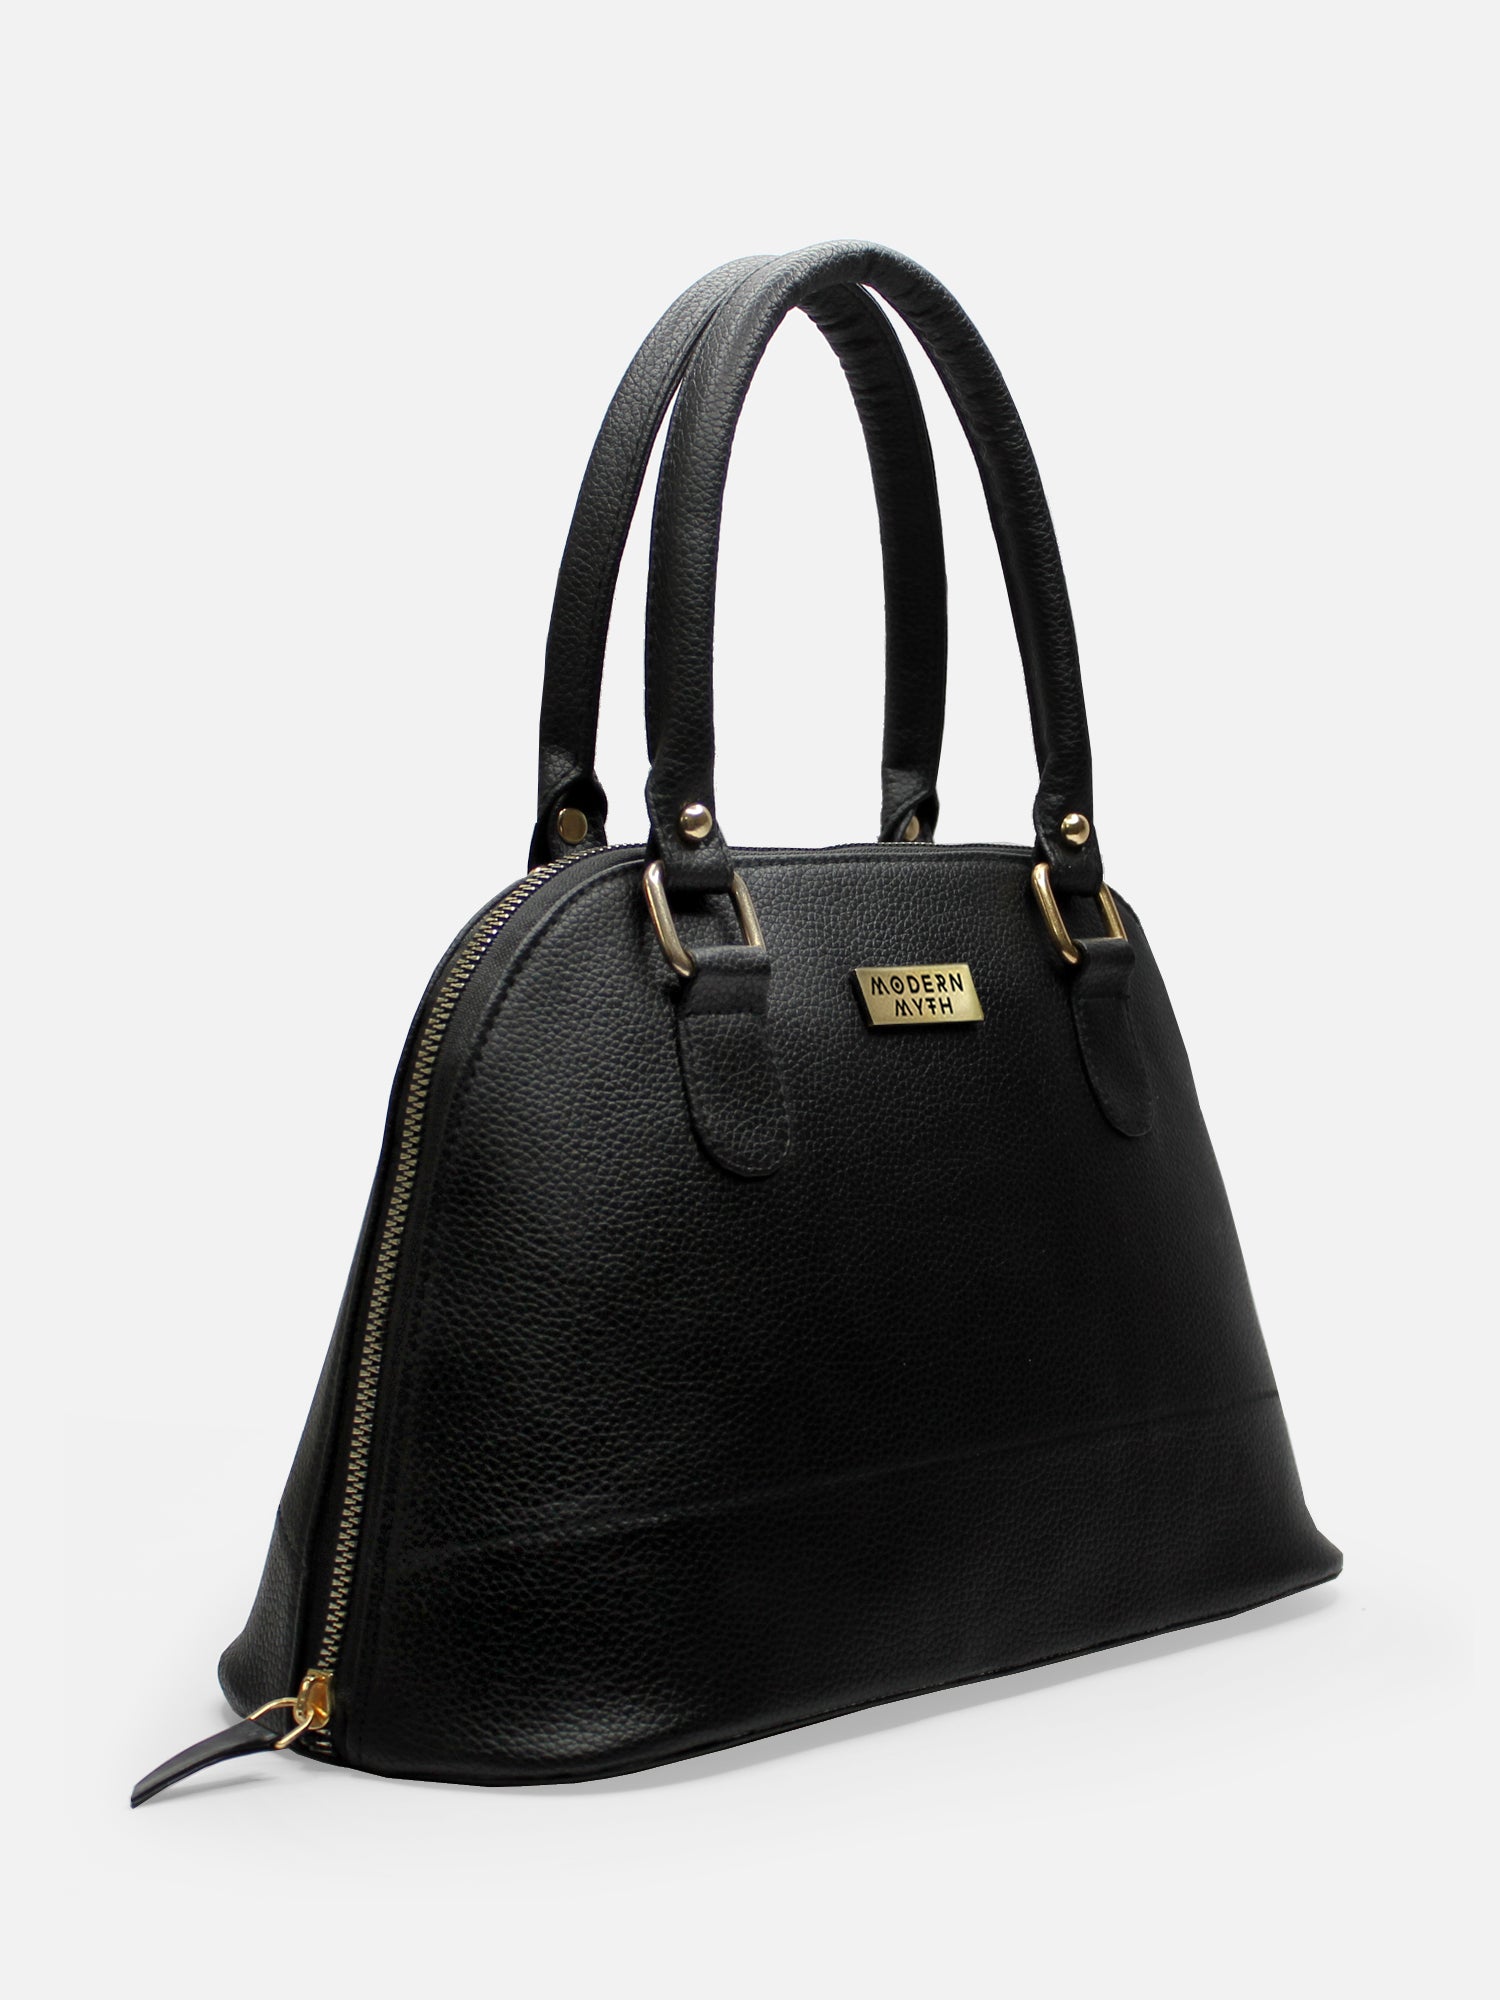 Fashion Faux Leather Hand Bag, Double Handle Zipper Shoulder Bag For Ladies,  Simple Satchel Purse - Walmart.com